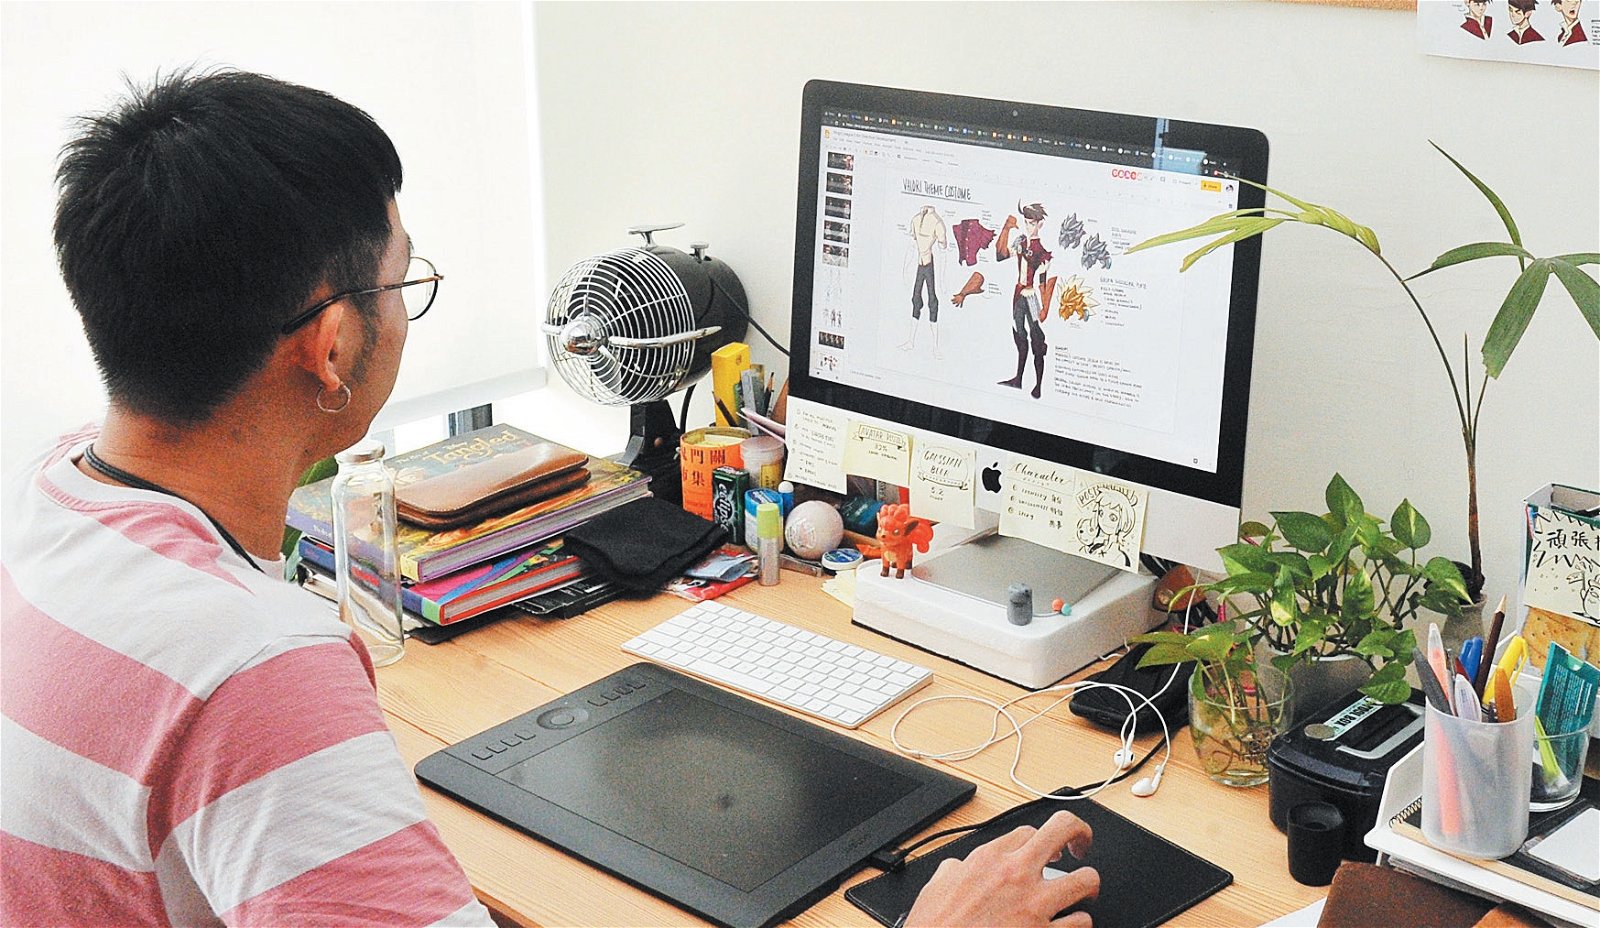 工作室如今正如火如荼地赶制《国王联盟2》，游戏美术员林佳泽的电脑上贴著小纸条，提醒自己在为角色设计造型时必须紧紧围绕身份、特征和故事。